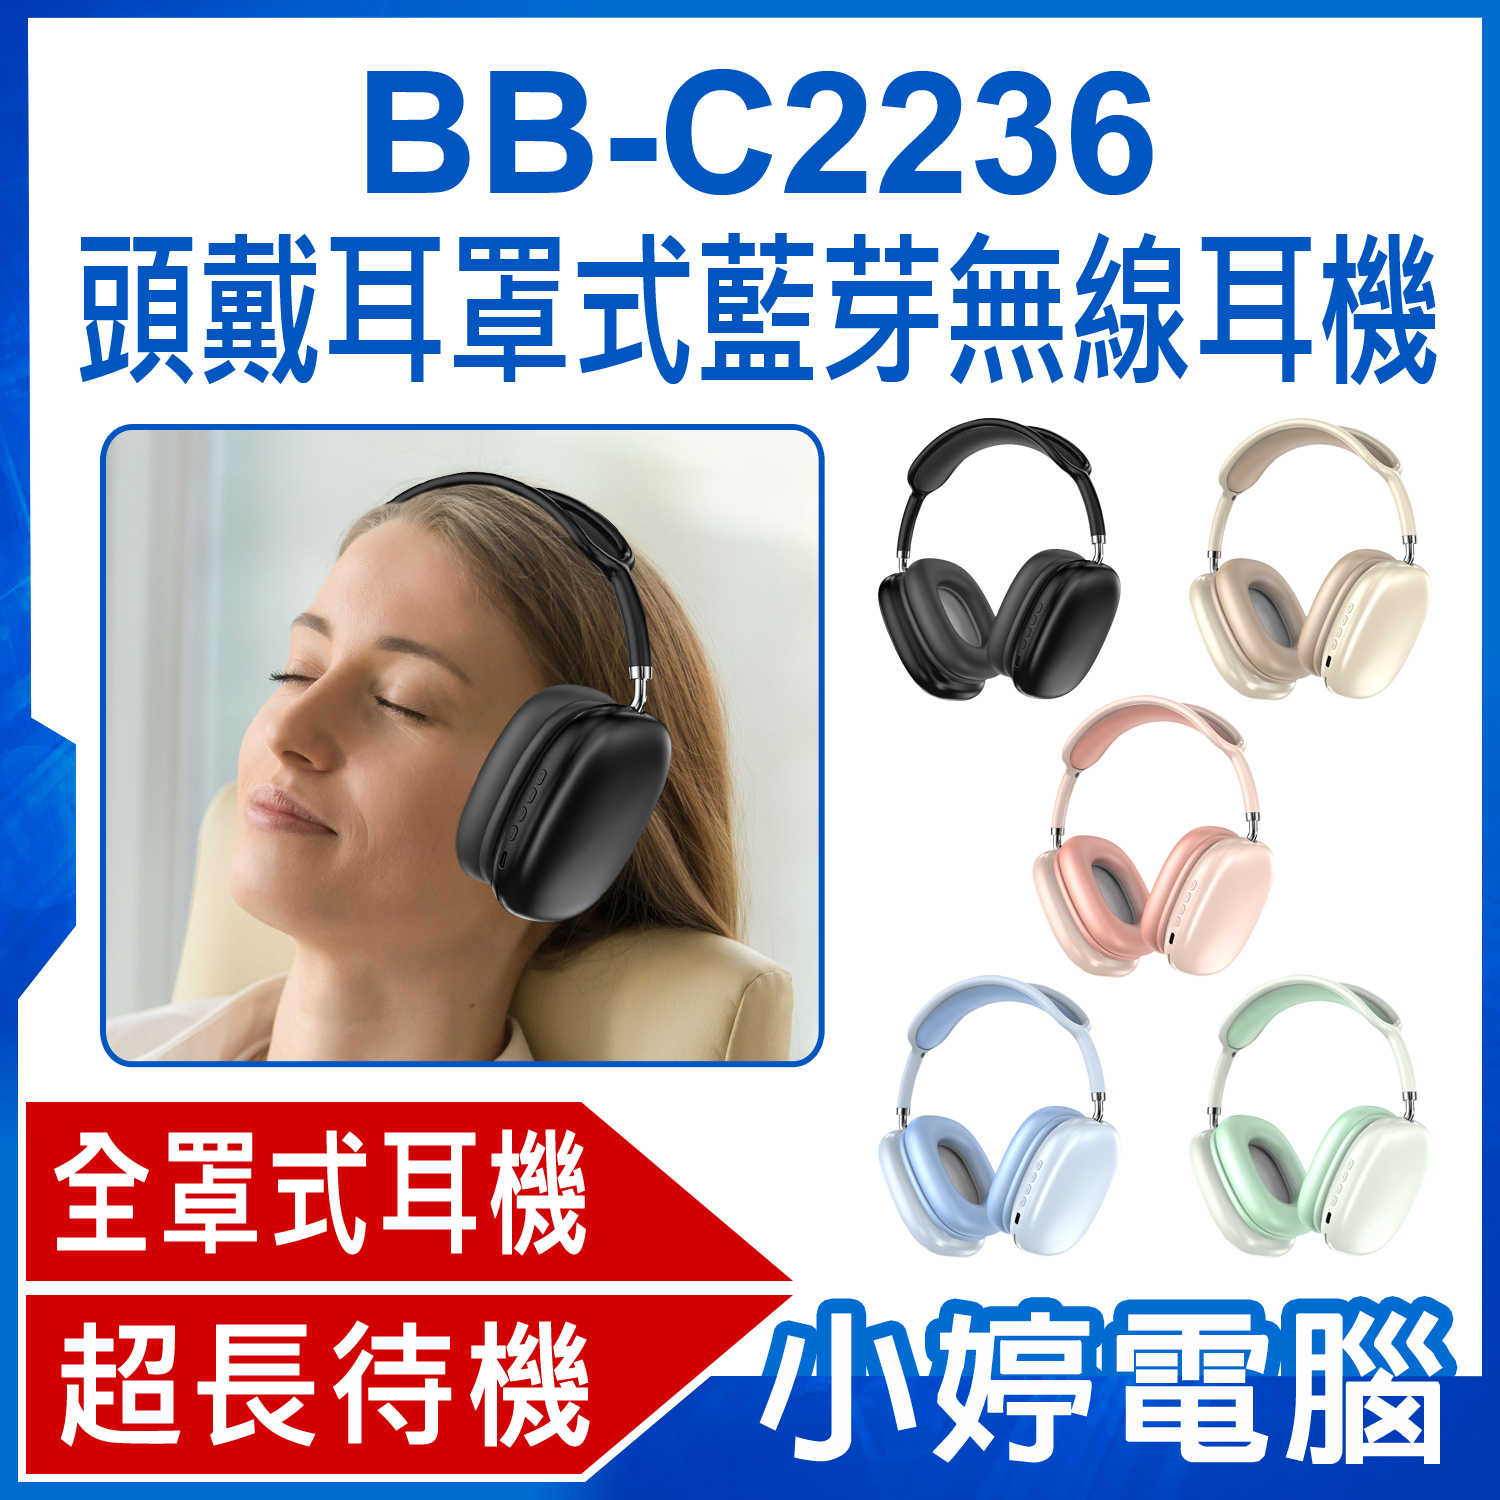 【小婷電腦】BB-C2236 頭戴耳罩式藍芽無線耳機 重低音全罩式降噪耳機 頭戴式耳機 立體聲無線運動耳麥 超長待機